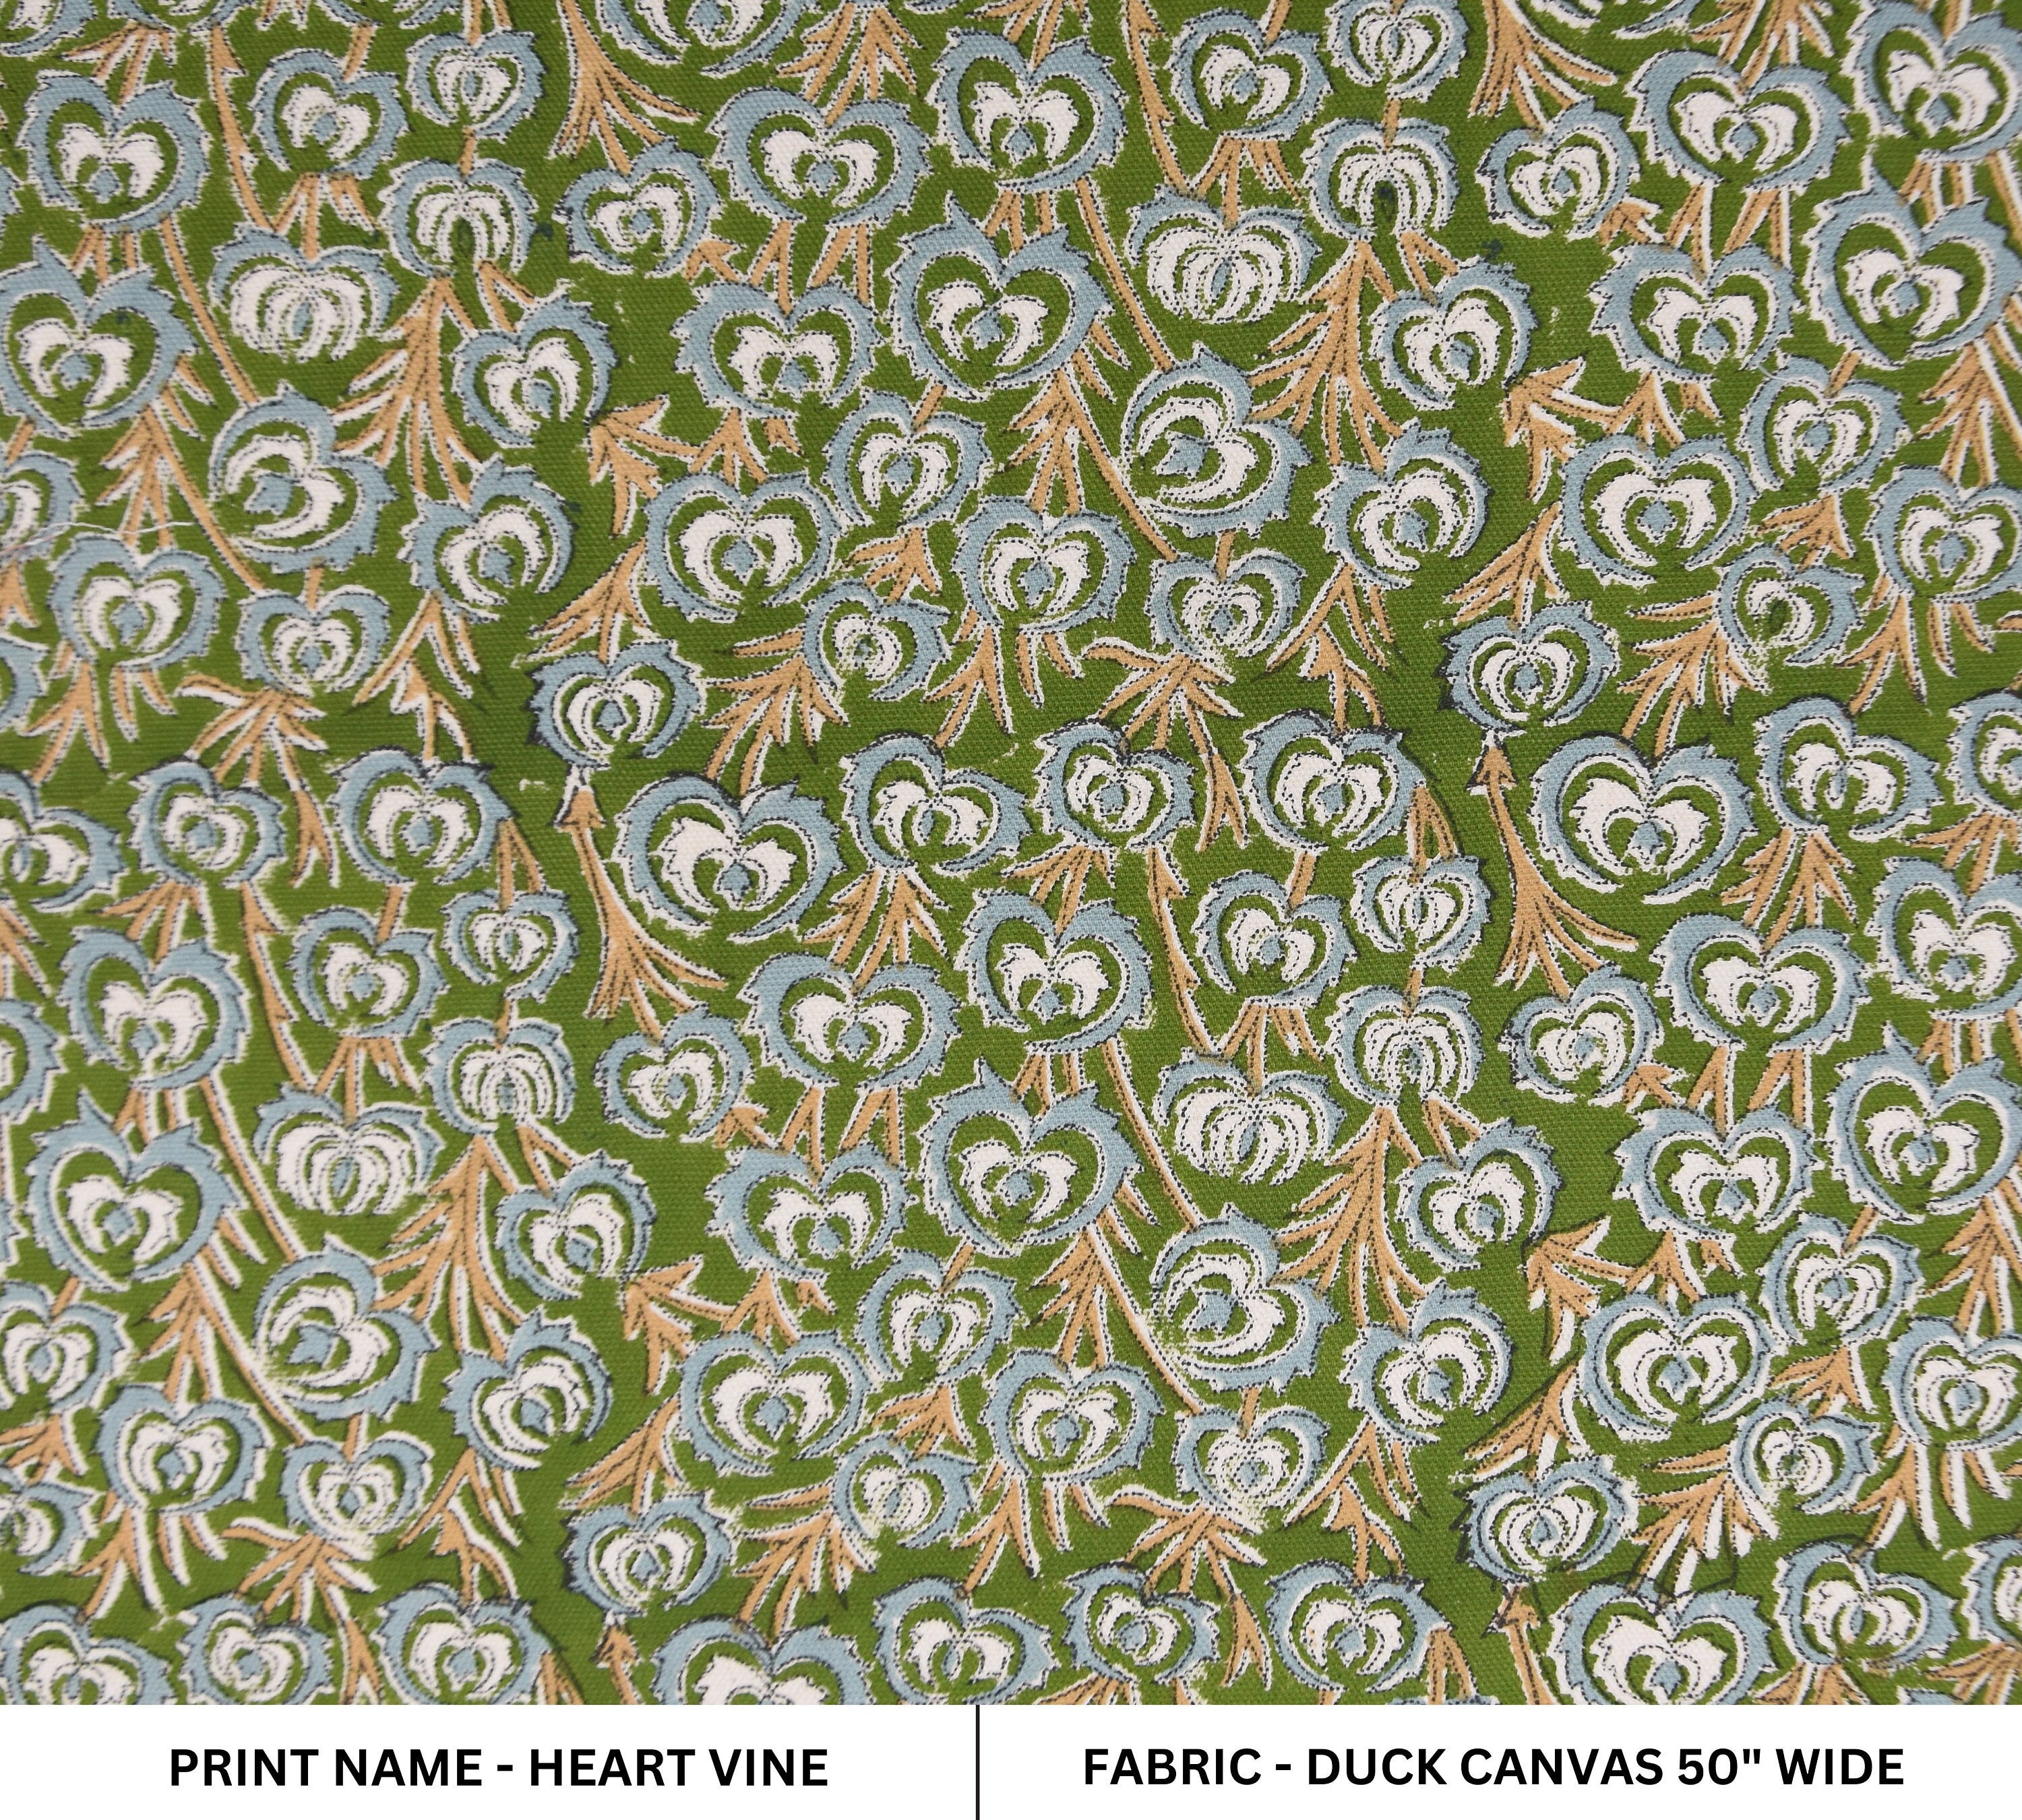 Handmade block print art, duck canvas 50" wide, cotton fabric, upholstery linen, Indian fabric, decorative pillows - HEART VINE